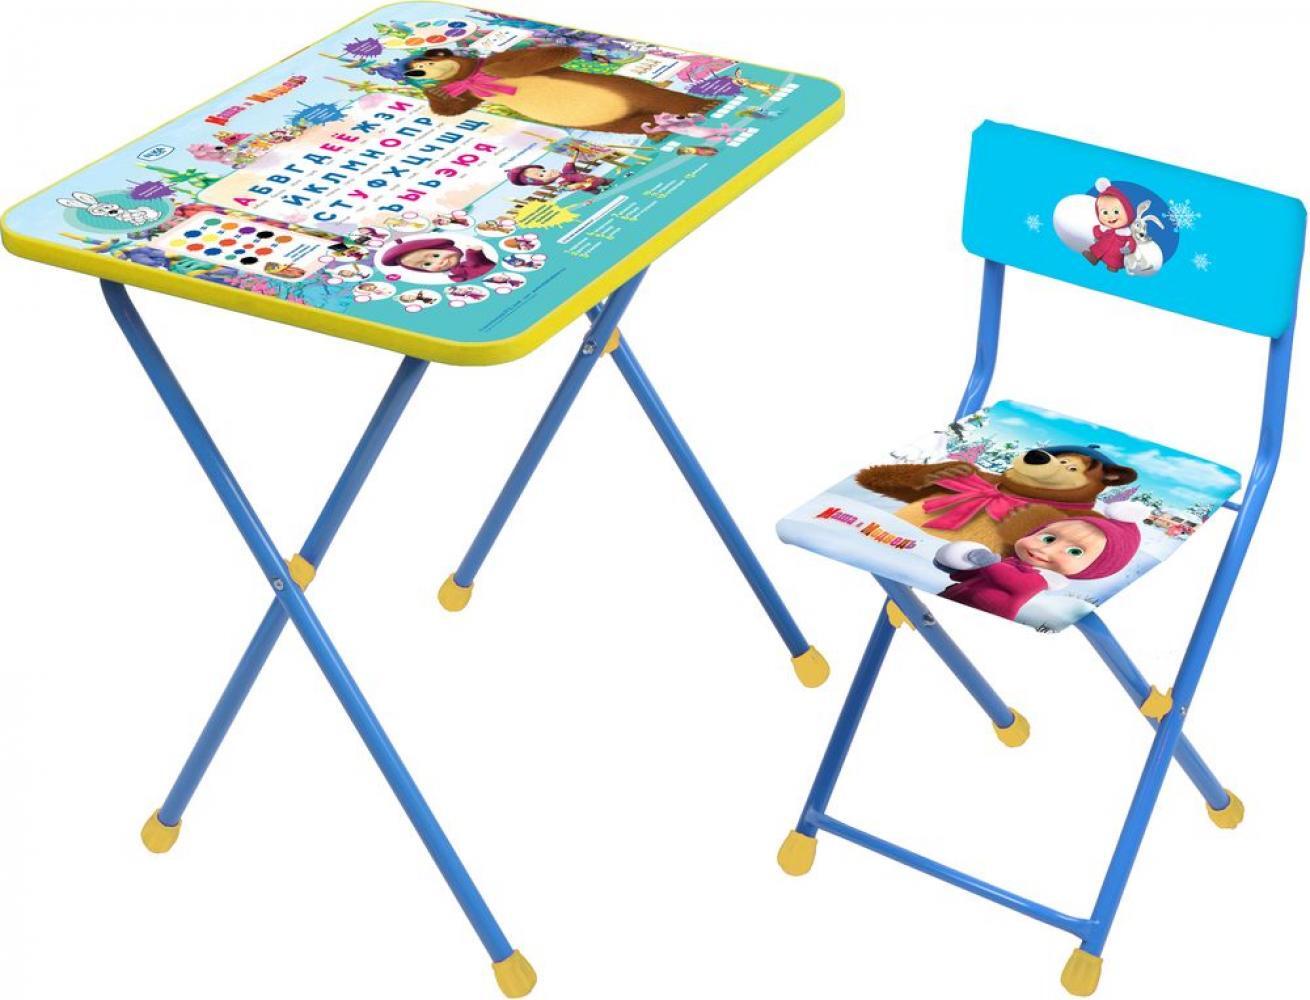 детский столик с ящиком и стульчиком